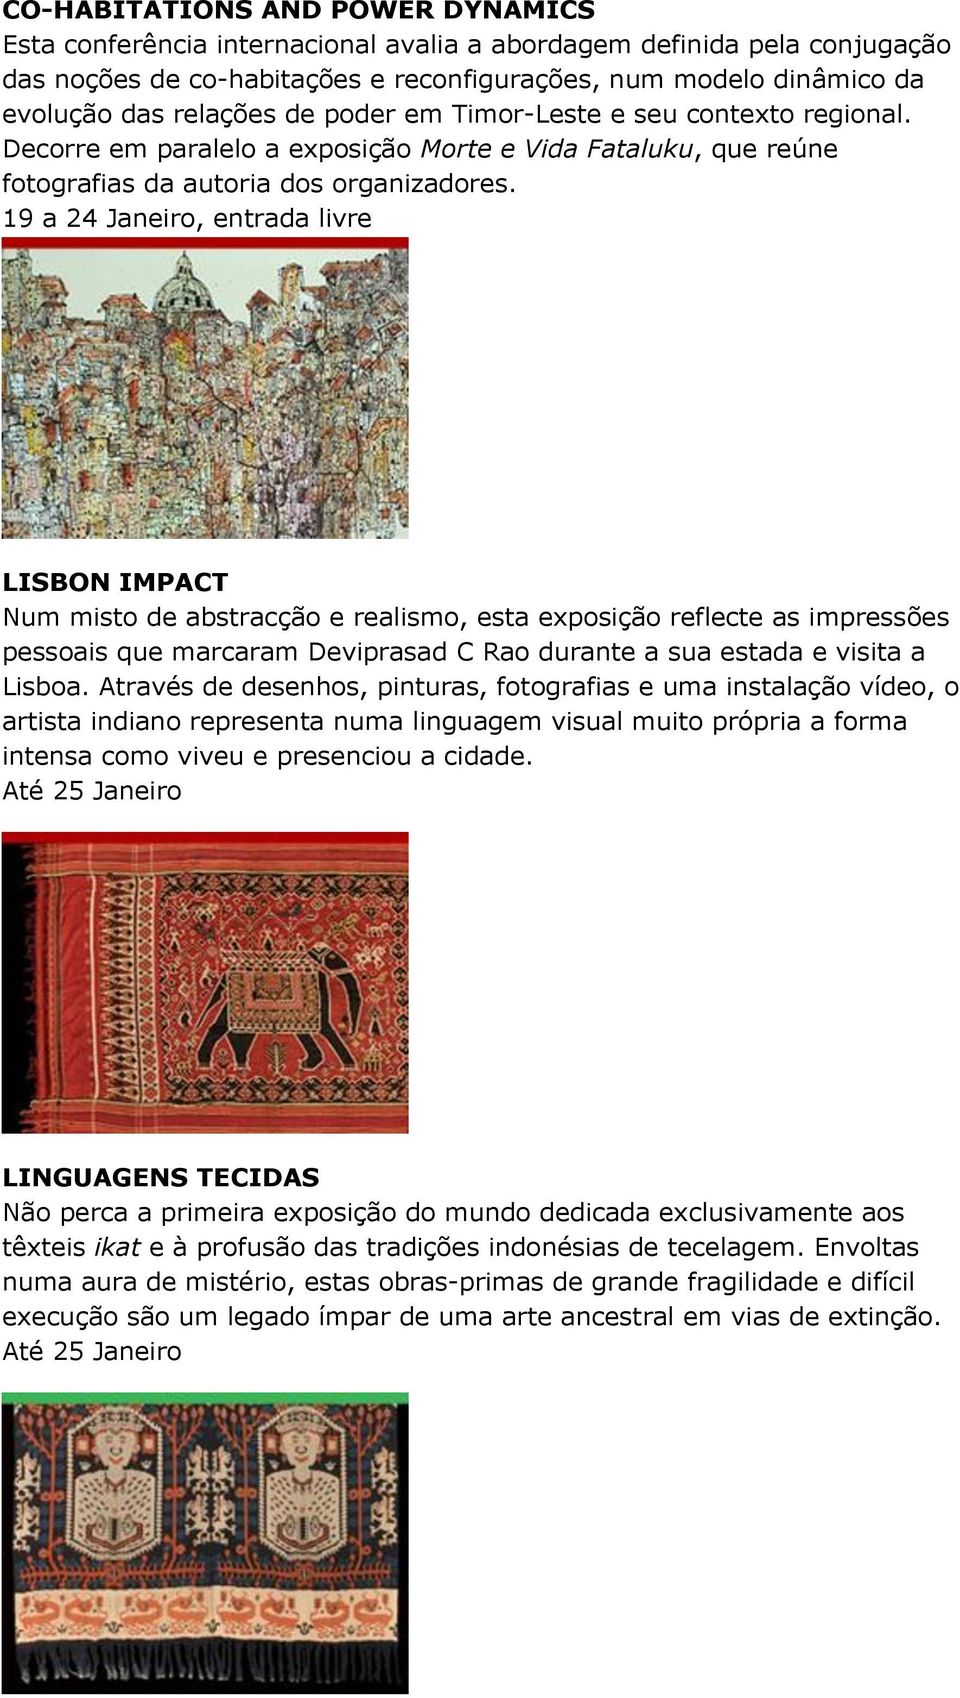 19 a 24 Janeiro, entrada livre LISBON IMPACT Num misto de abstracção e realismo, esta exposição reflecte as impressões pessoais que marcaram Deviprasad C Rao durante a sua estada e visita a Lisboa.